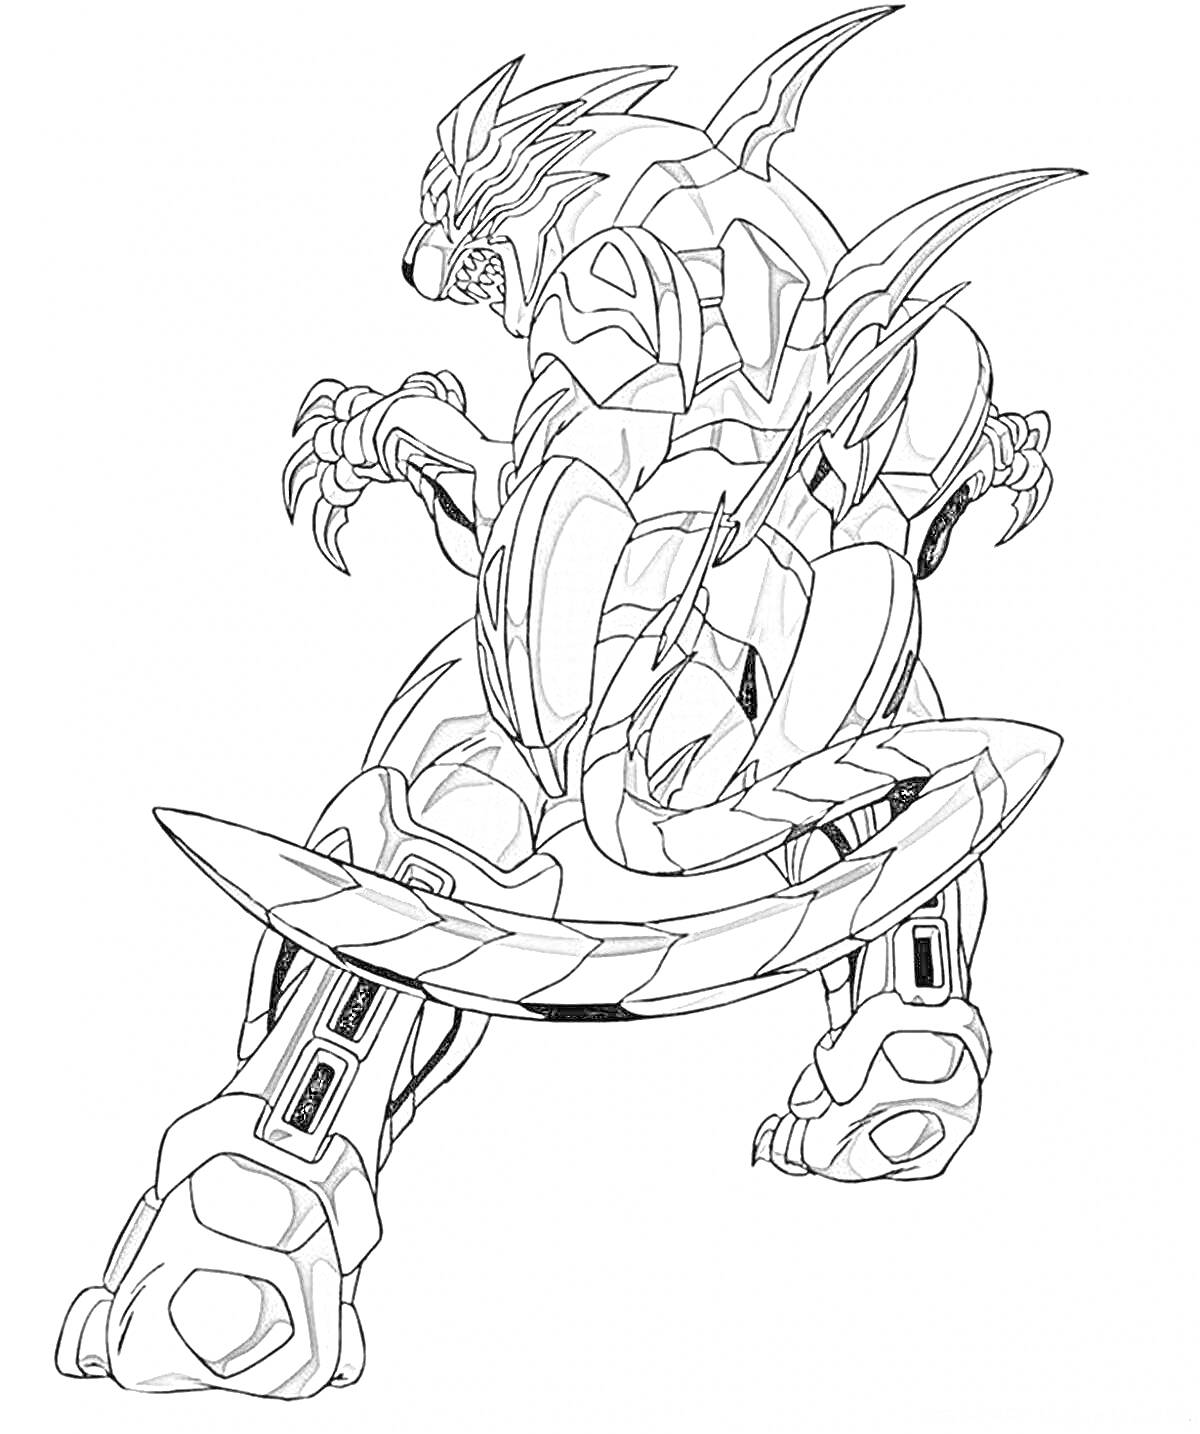 Бакуган в форме дракона, вид сзади, с рогами, когтями и хвостом